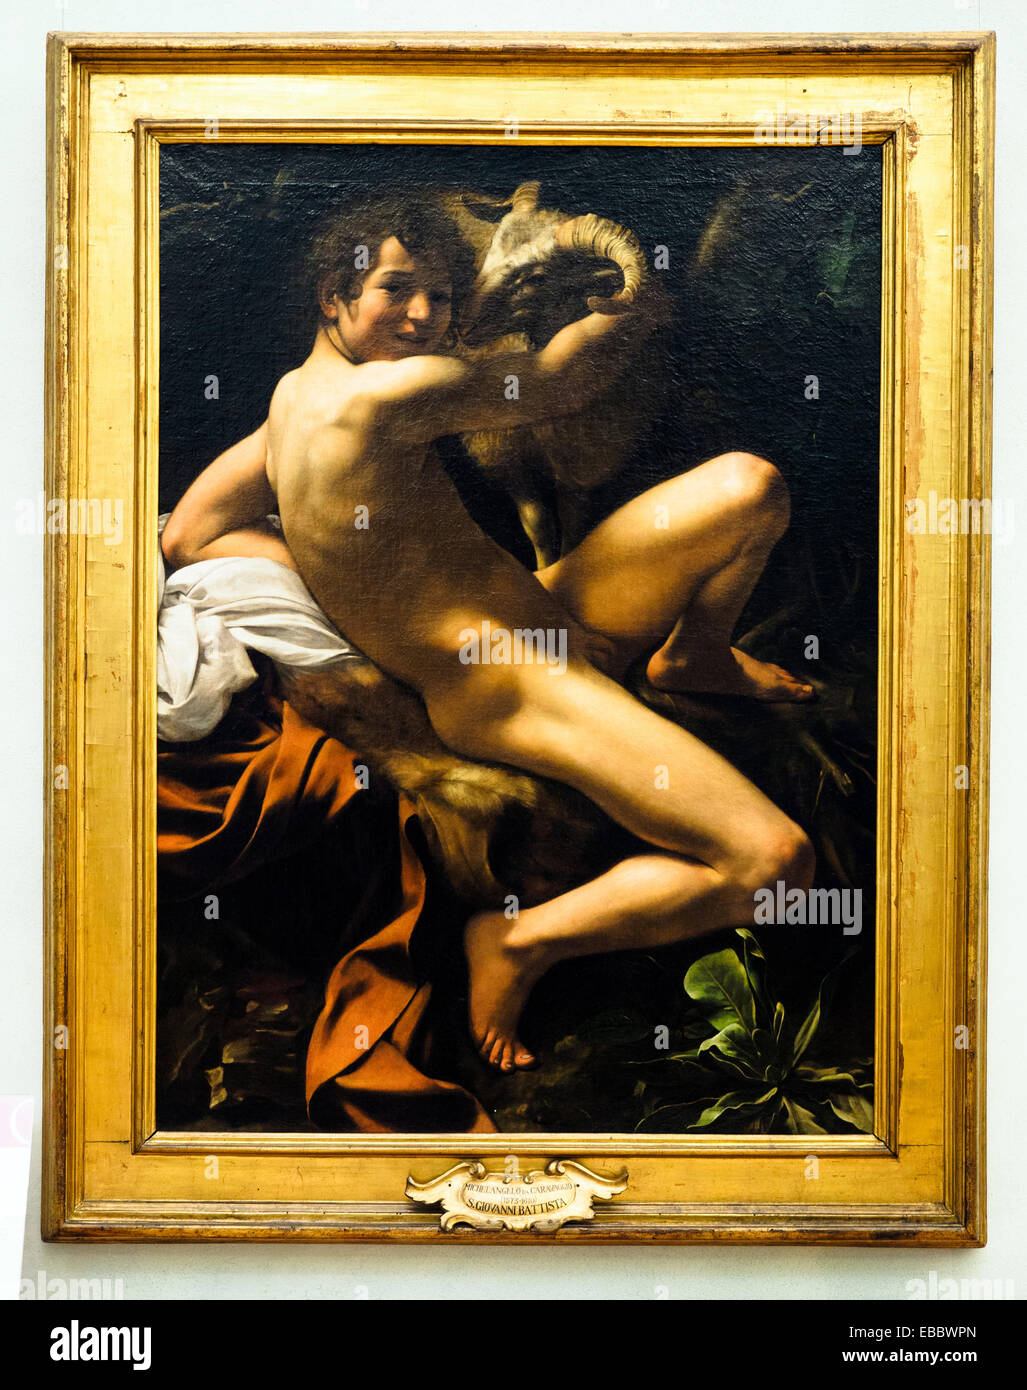 Caravaggio (Michelangelo Merisi, Milano 1571 - Porto Ercole 1610) San Giovanni Battista (St. Jhon the Baptist) Oil on Canvas Musei Capitolini - Rome, Italy Stock Photo